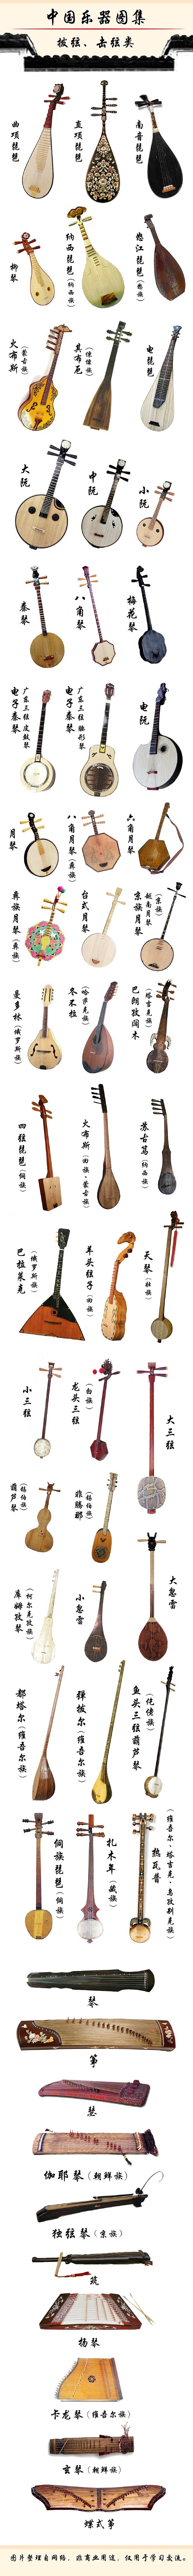 中国最全的拨弦，击弦类乐器图集，收藏学习...